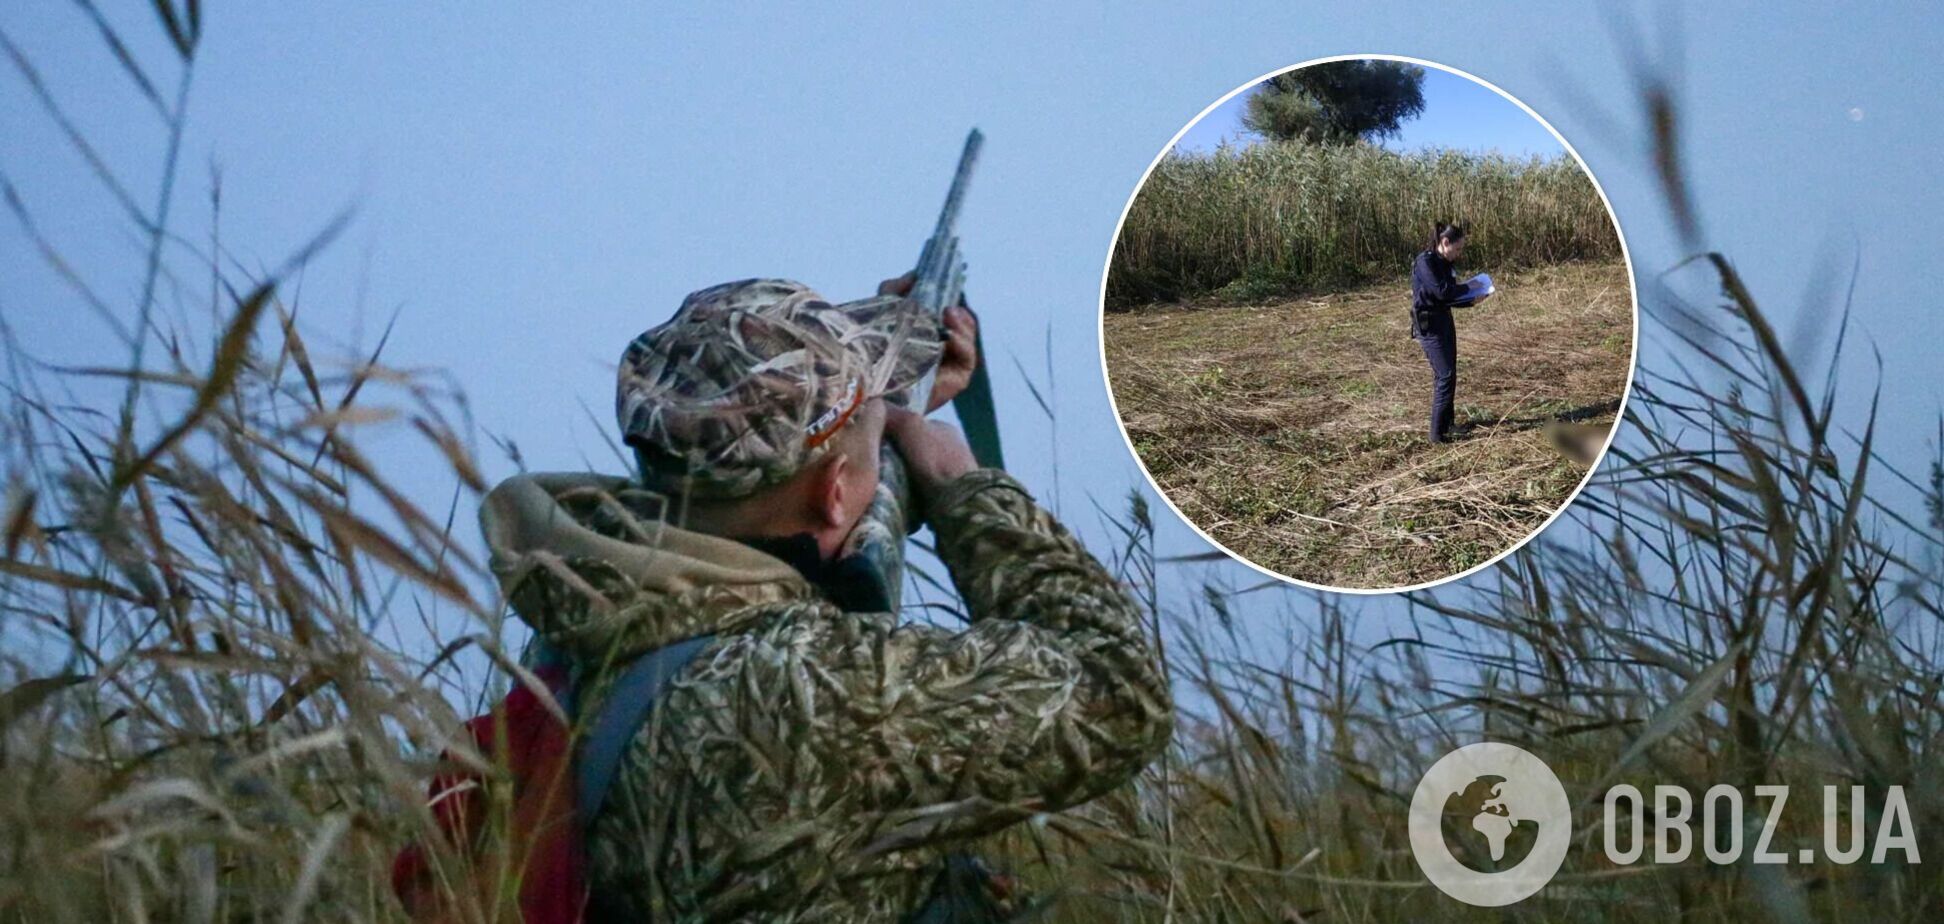 Целился в дичь: на Одесщине мужчина застрелил товарища во время охоты. Фото